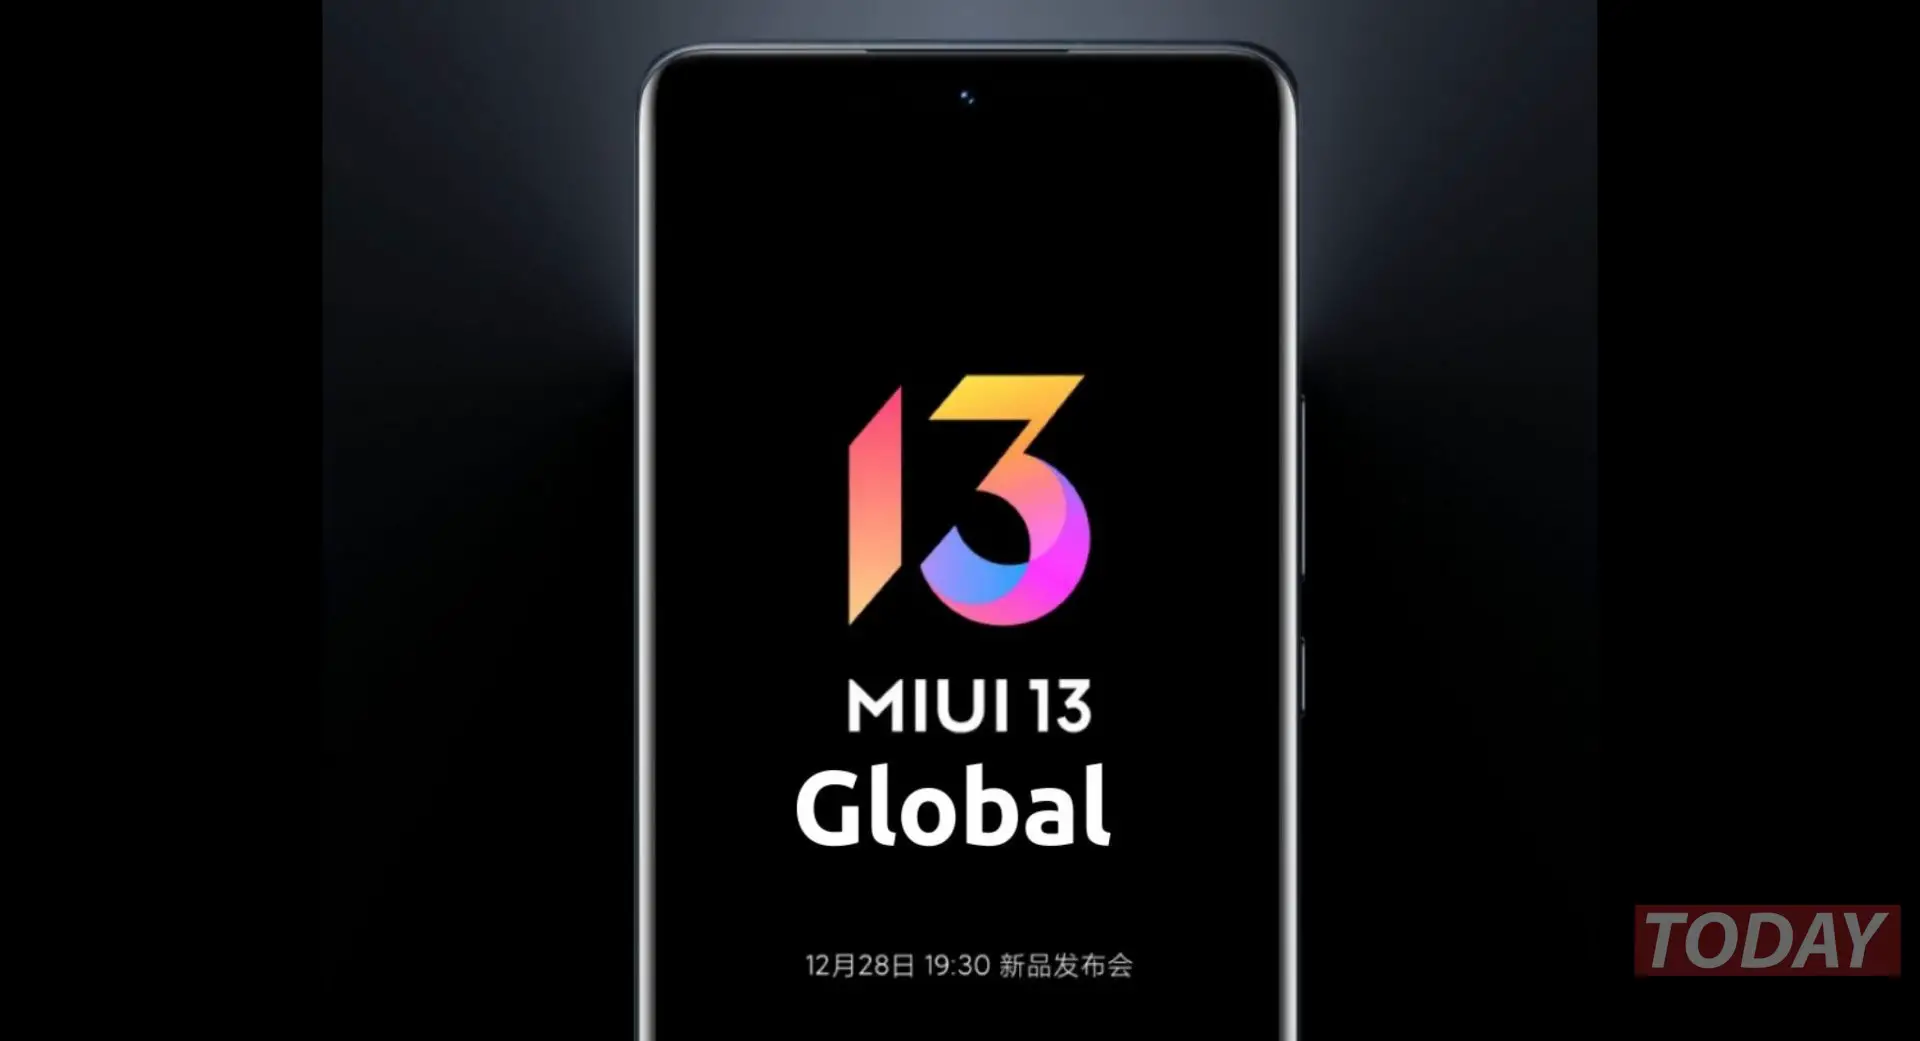 MIUI 13 الرسمية العالمية: الأخبار وقائمة الأجهزة التي سيتم تحديثها